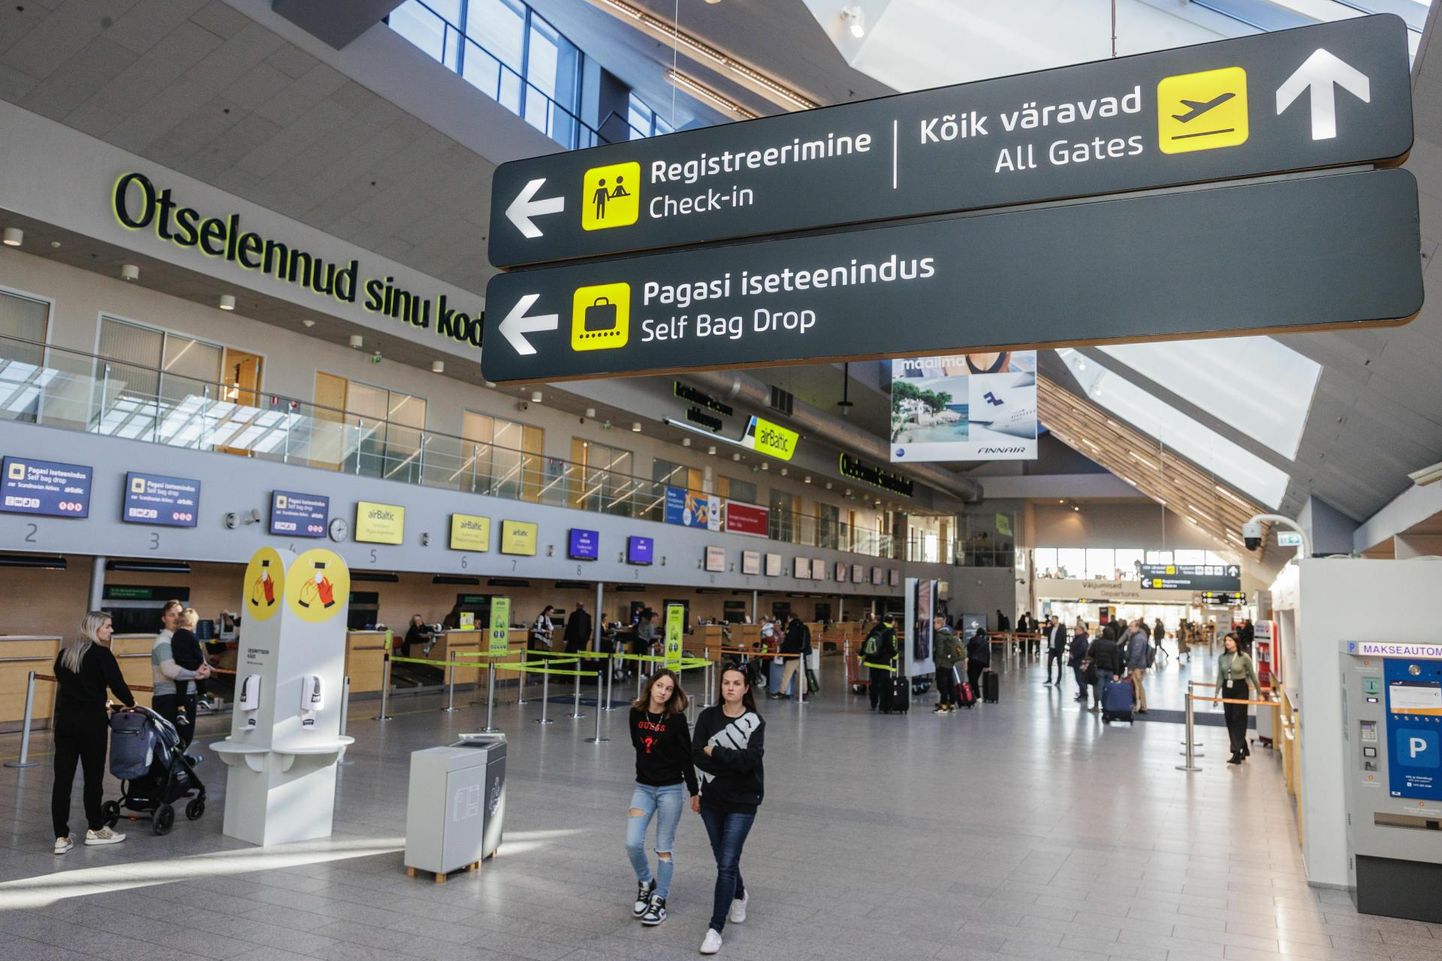 Viimase kümne aasta jooksul on Tallinna Lennujaam saanud riigilt toetust ligi 119 miljoni euro ulatuses - samal perioodil on toetusi jagatud ühtekokku 4 miljardi ulatuses.